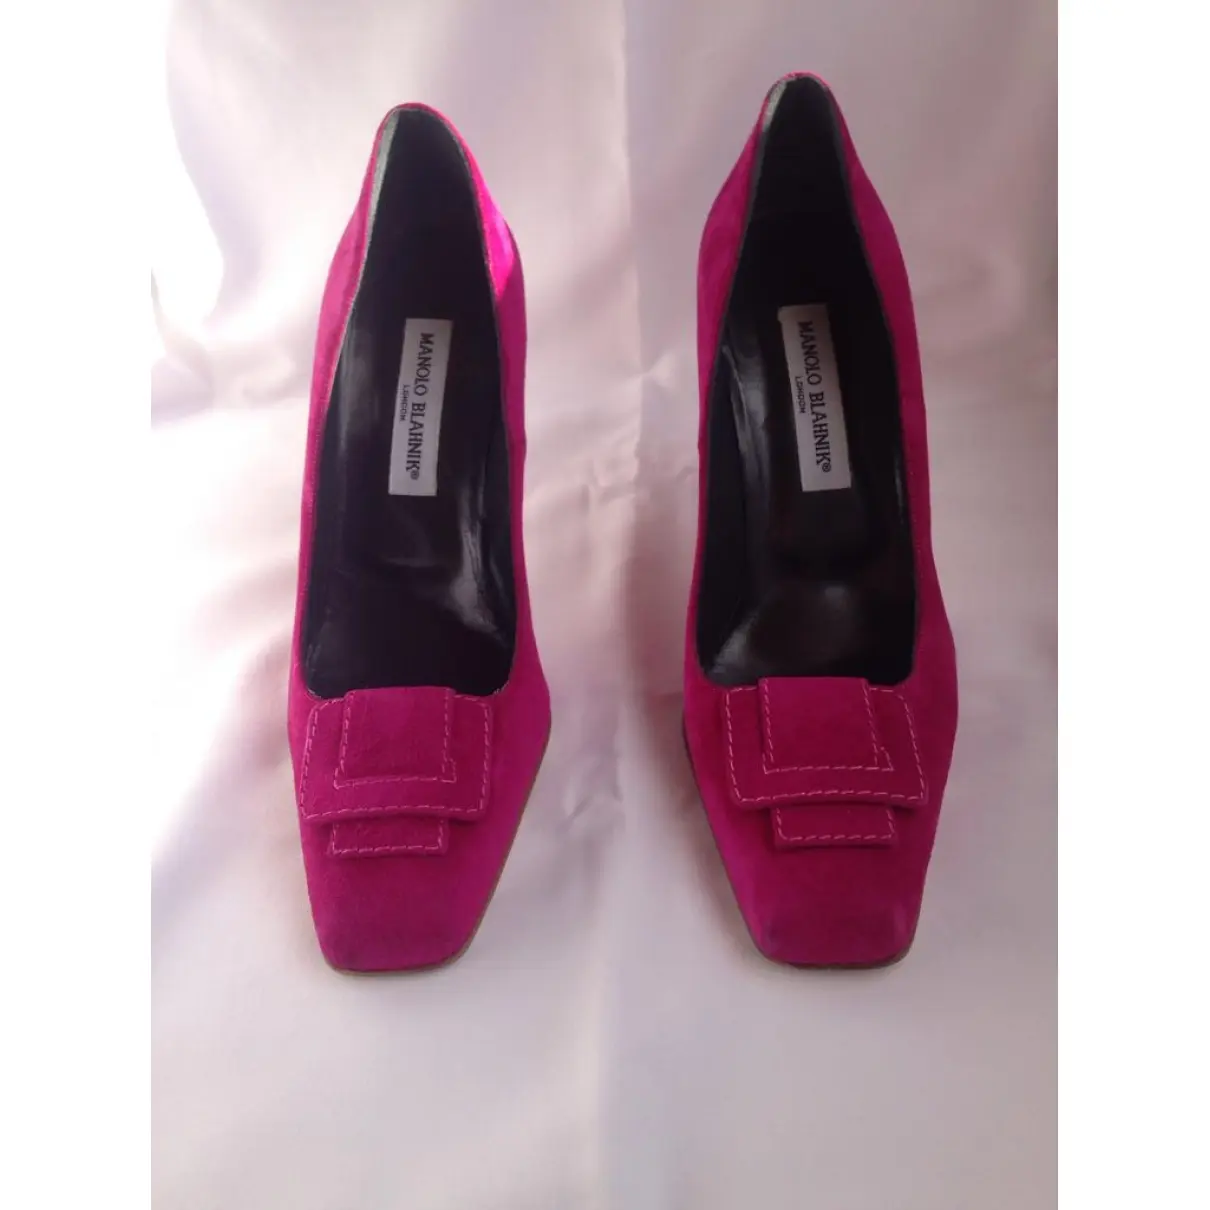 Manolo Blahnik Hangisi heels for sale